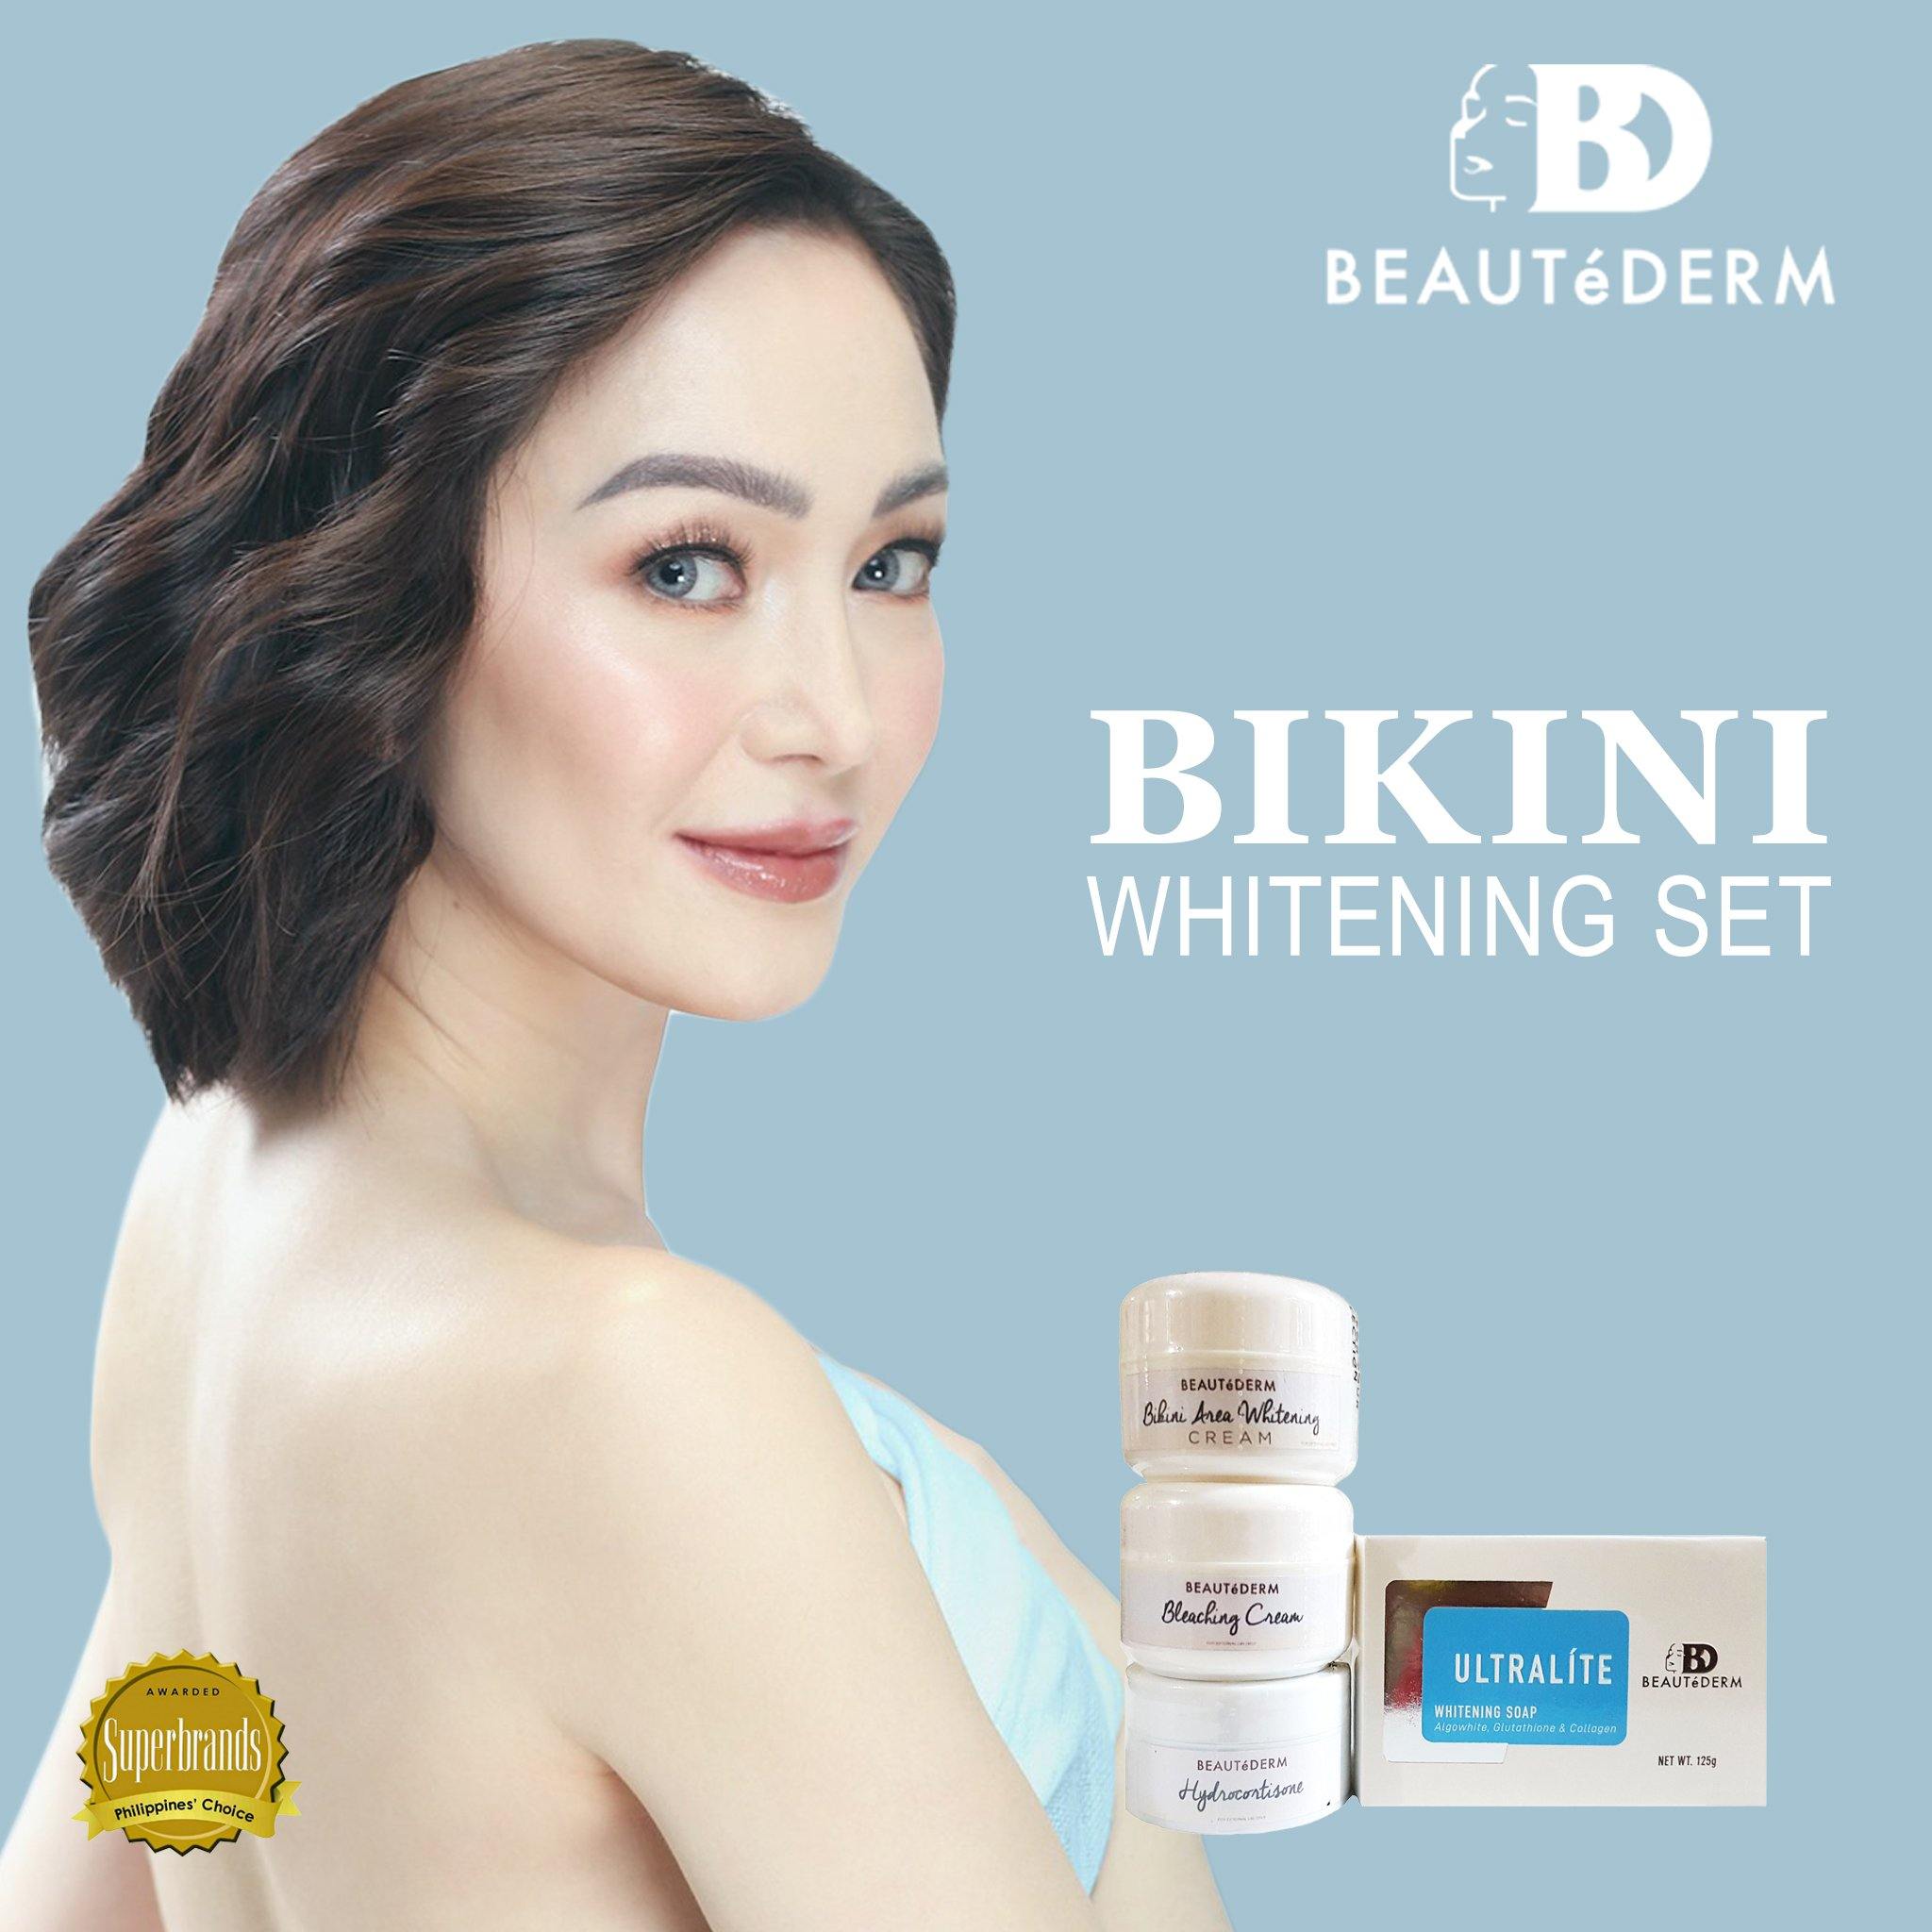 Bikini Whitening Set (Bikini Area Whitening Cream, Bleaching Cream, Hydrocortisone) with Kitkat (Beautederm Ambassador)